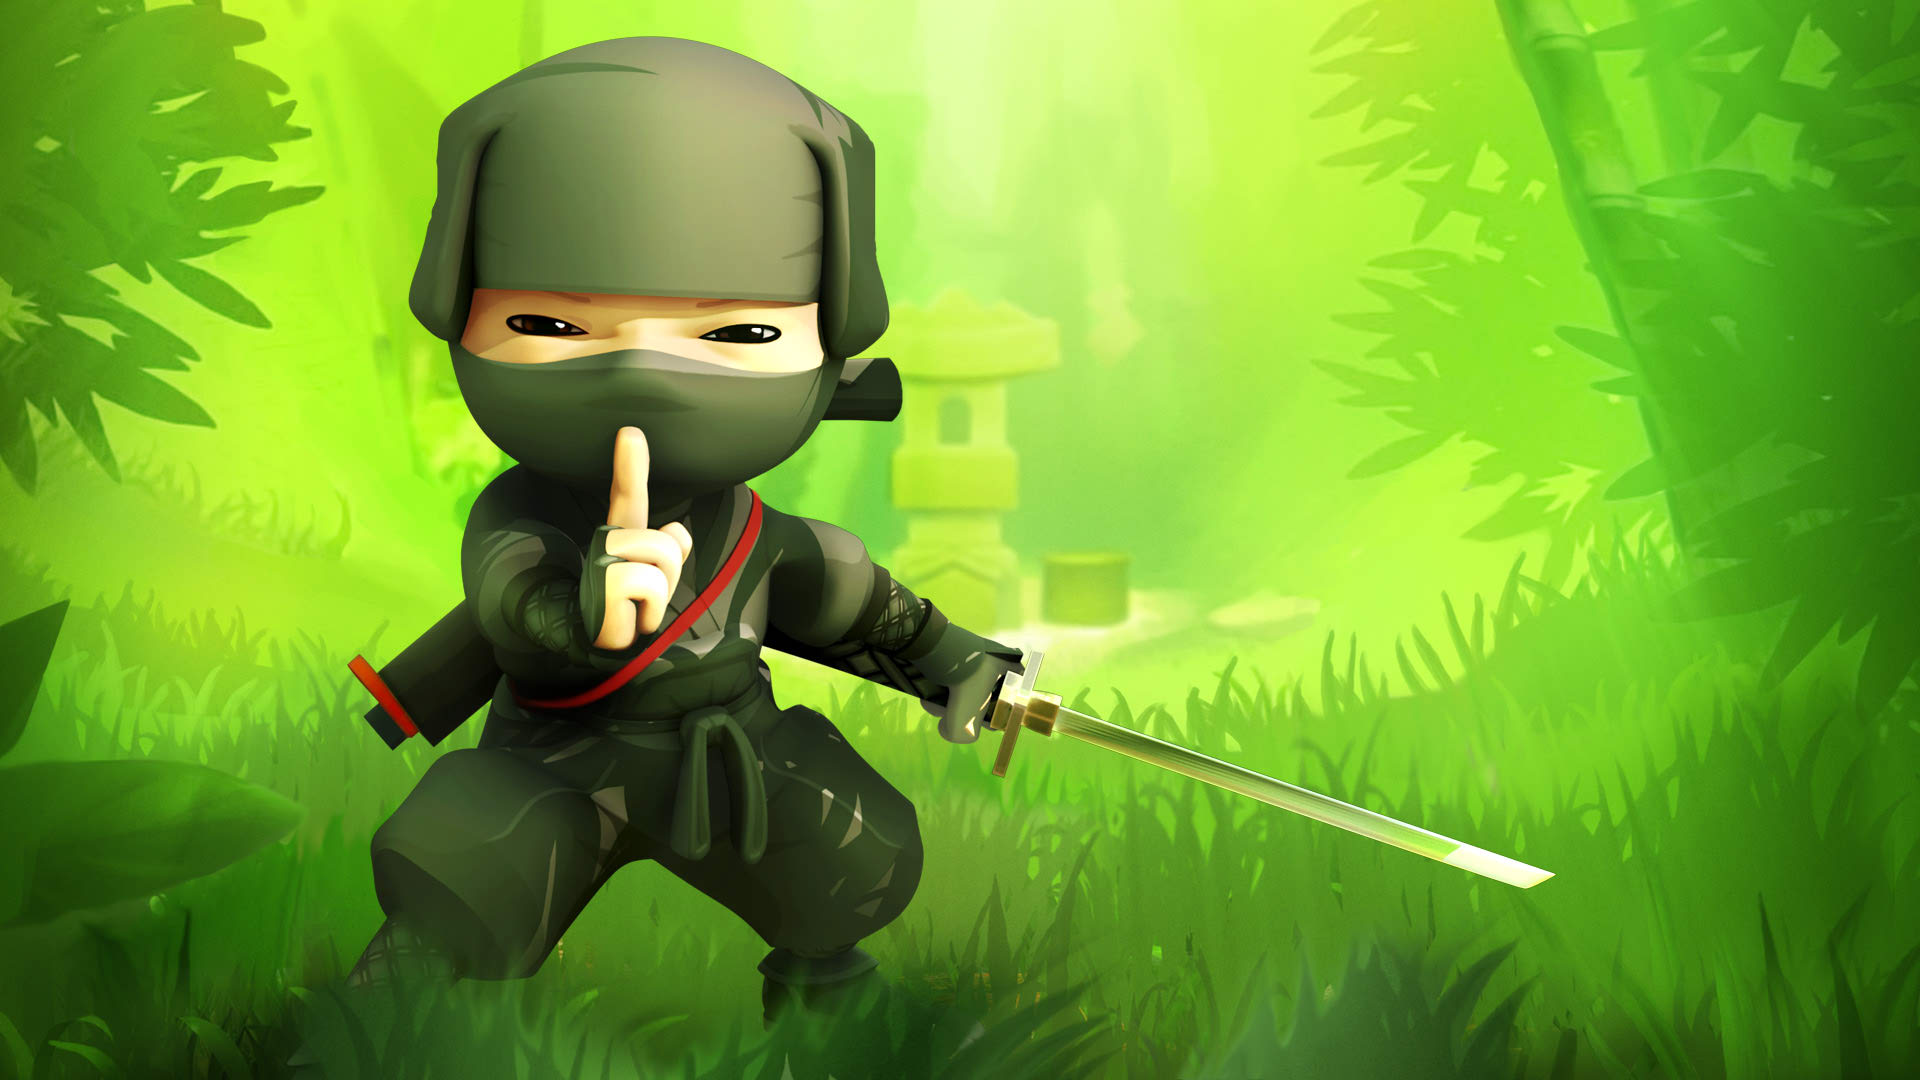 wonderful mini ninjas image